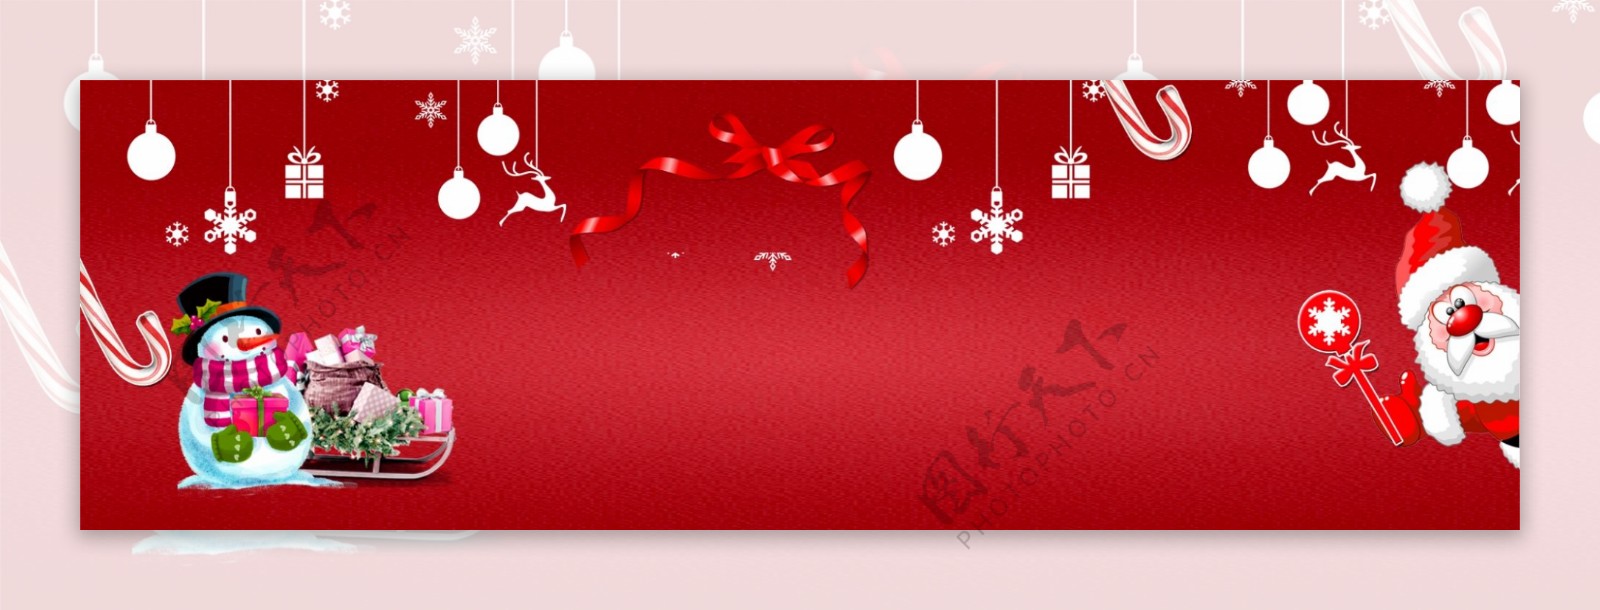 雪花圣诞节圣诞快乐banner背景